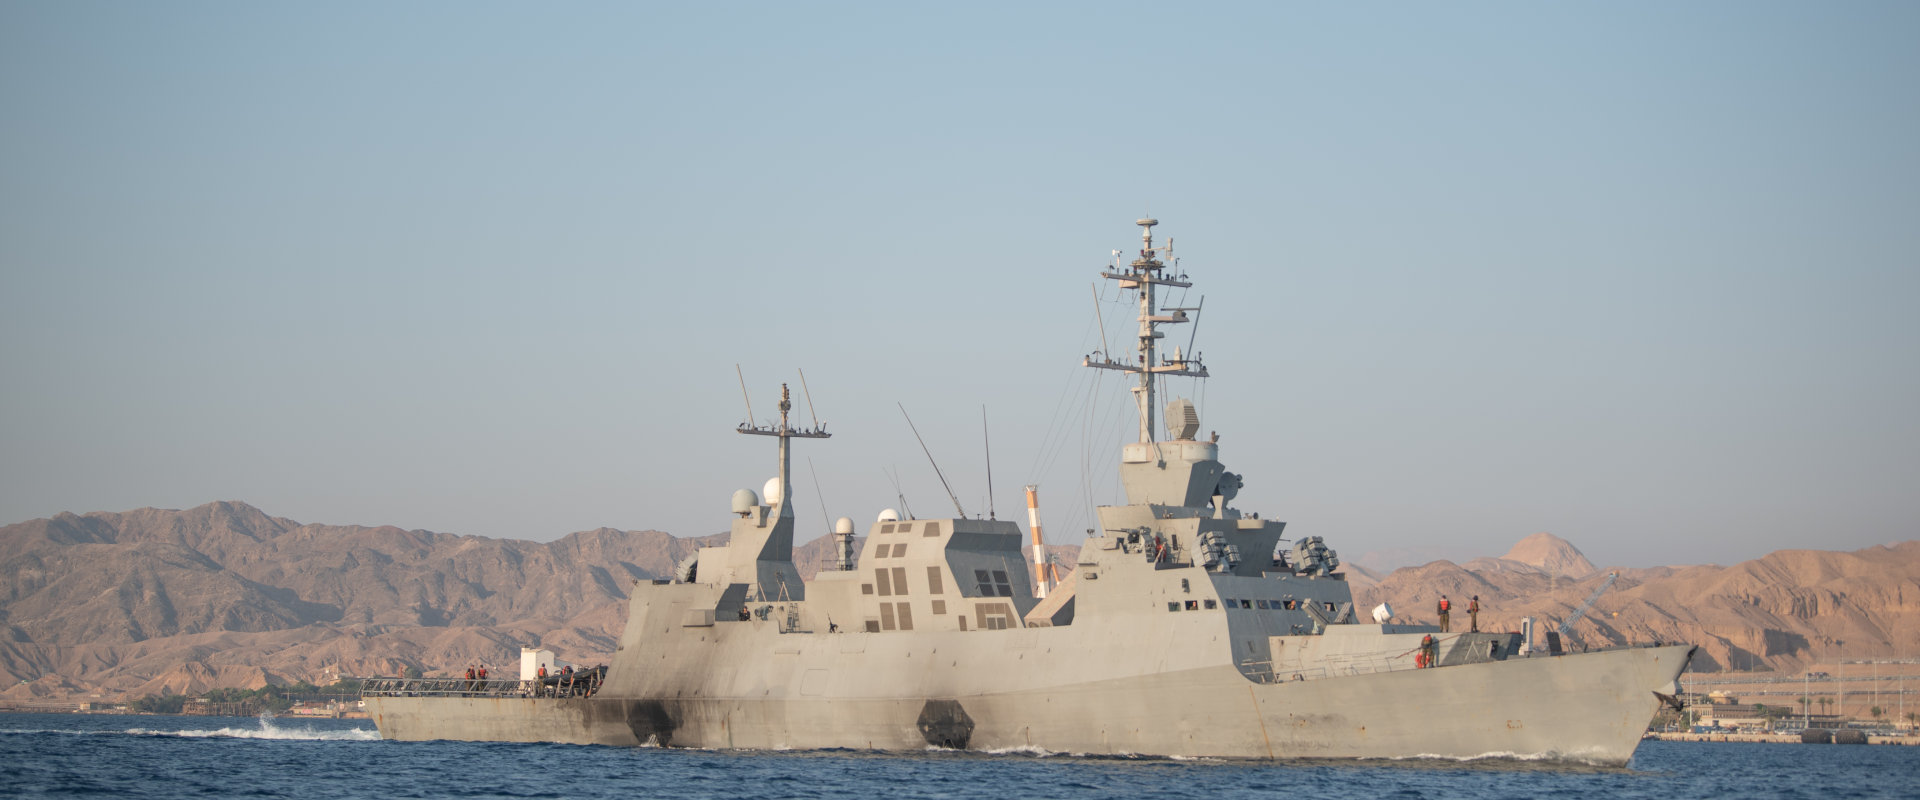 הושלם תהליך מבצוע ספינות המגן, הן נכנסו לפעילות במרחב ים סוף